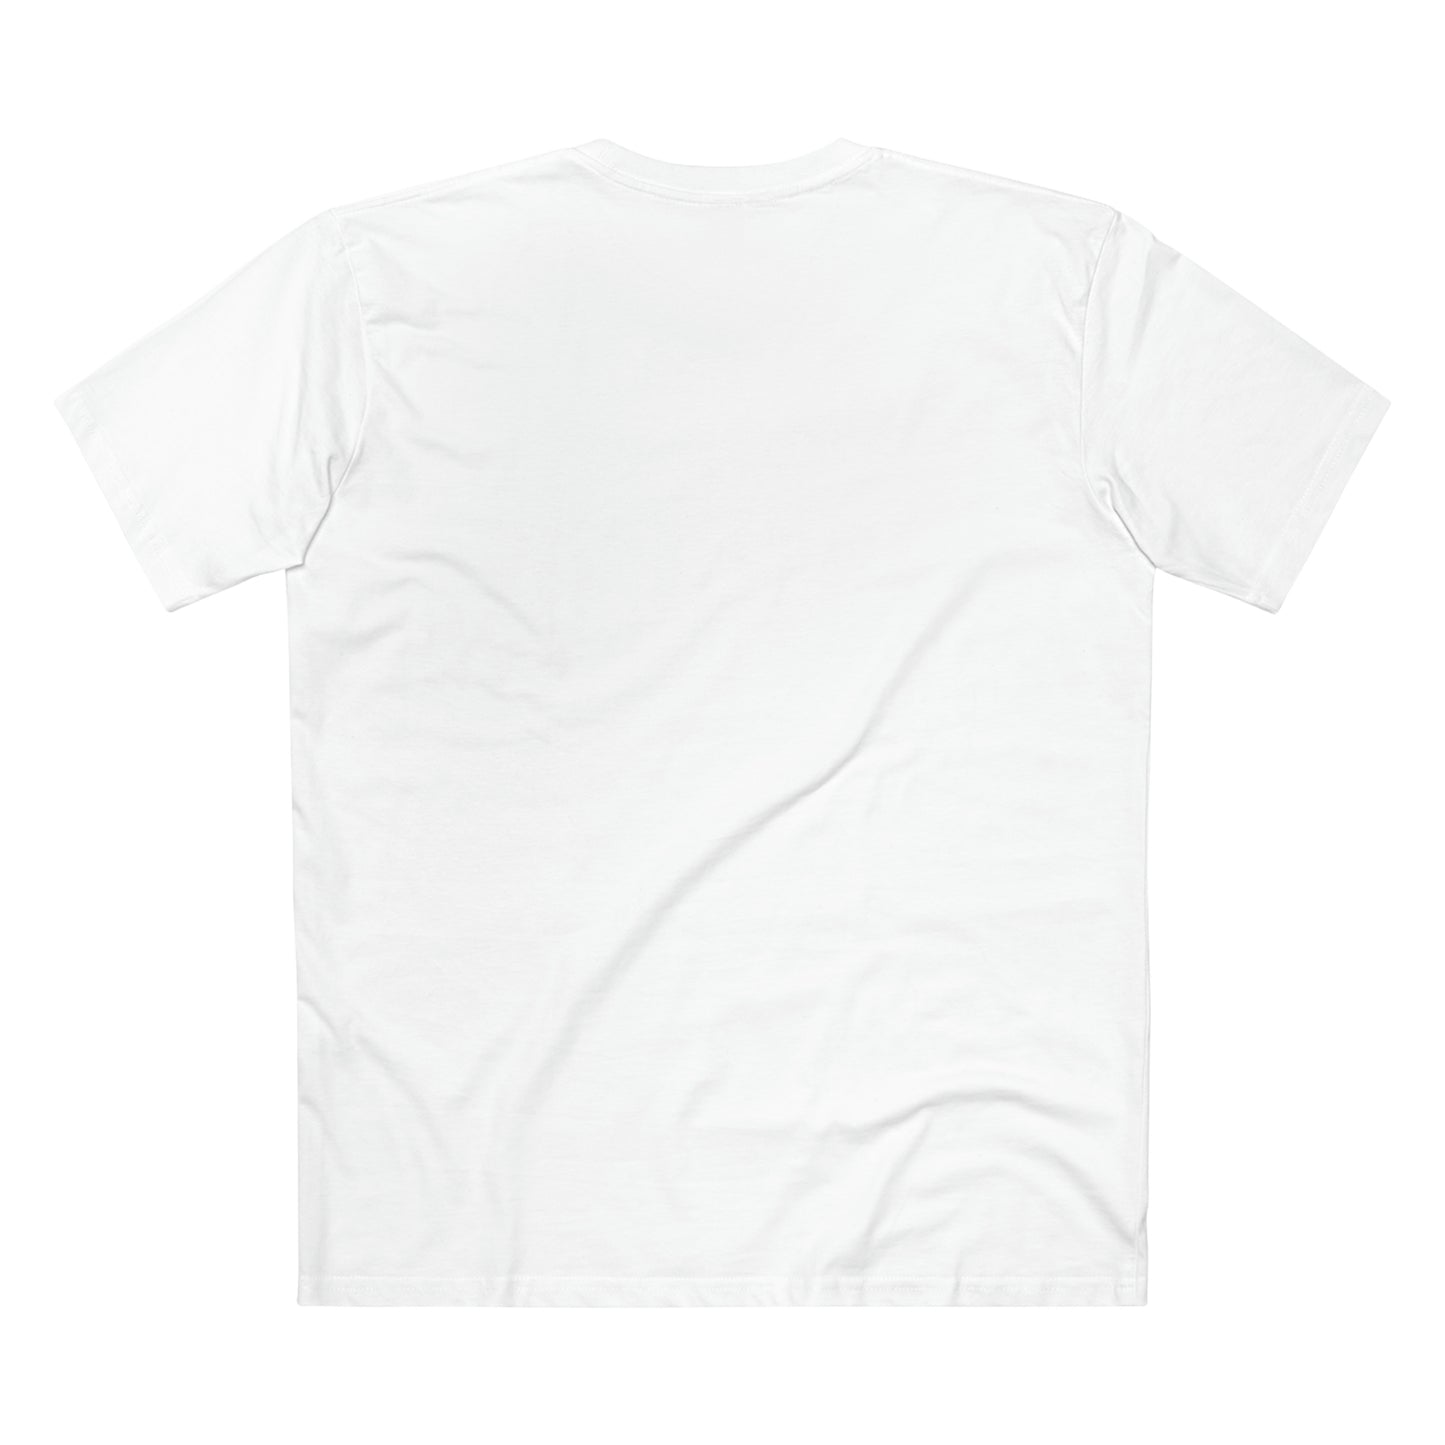 97 PIZZA T-Shirt